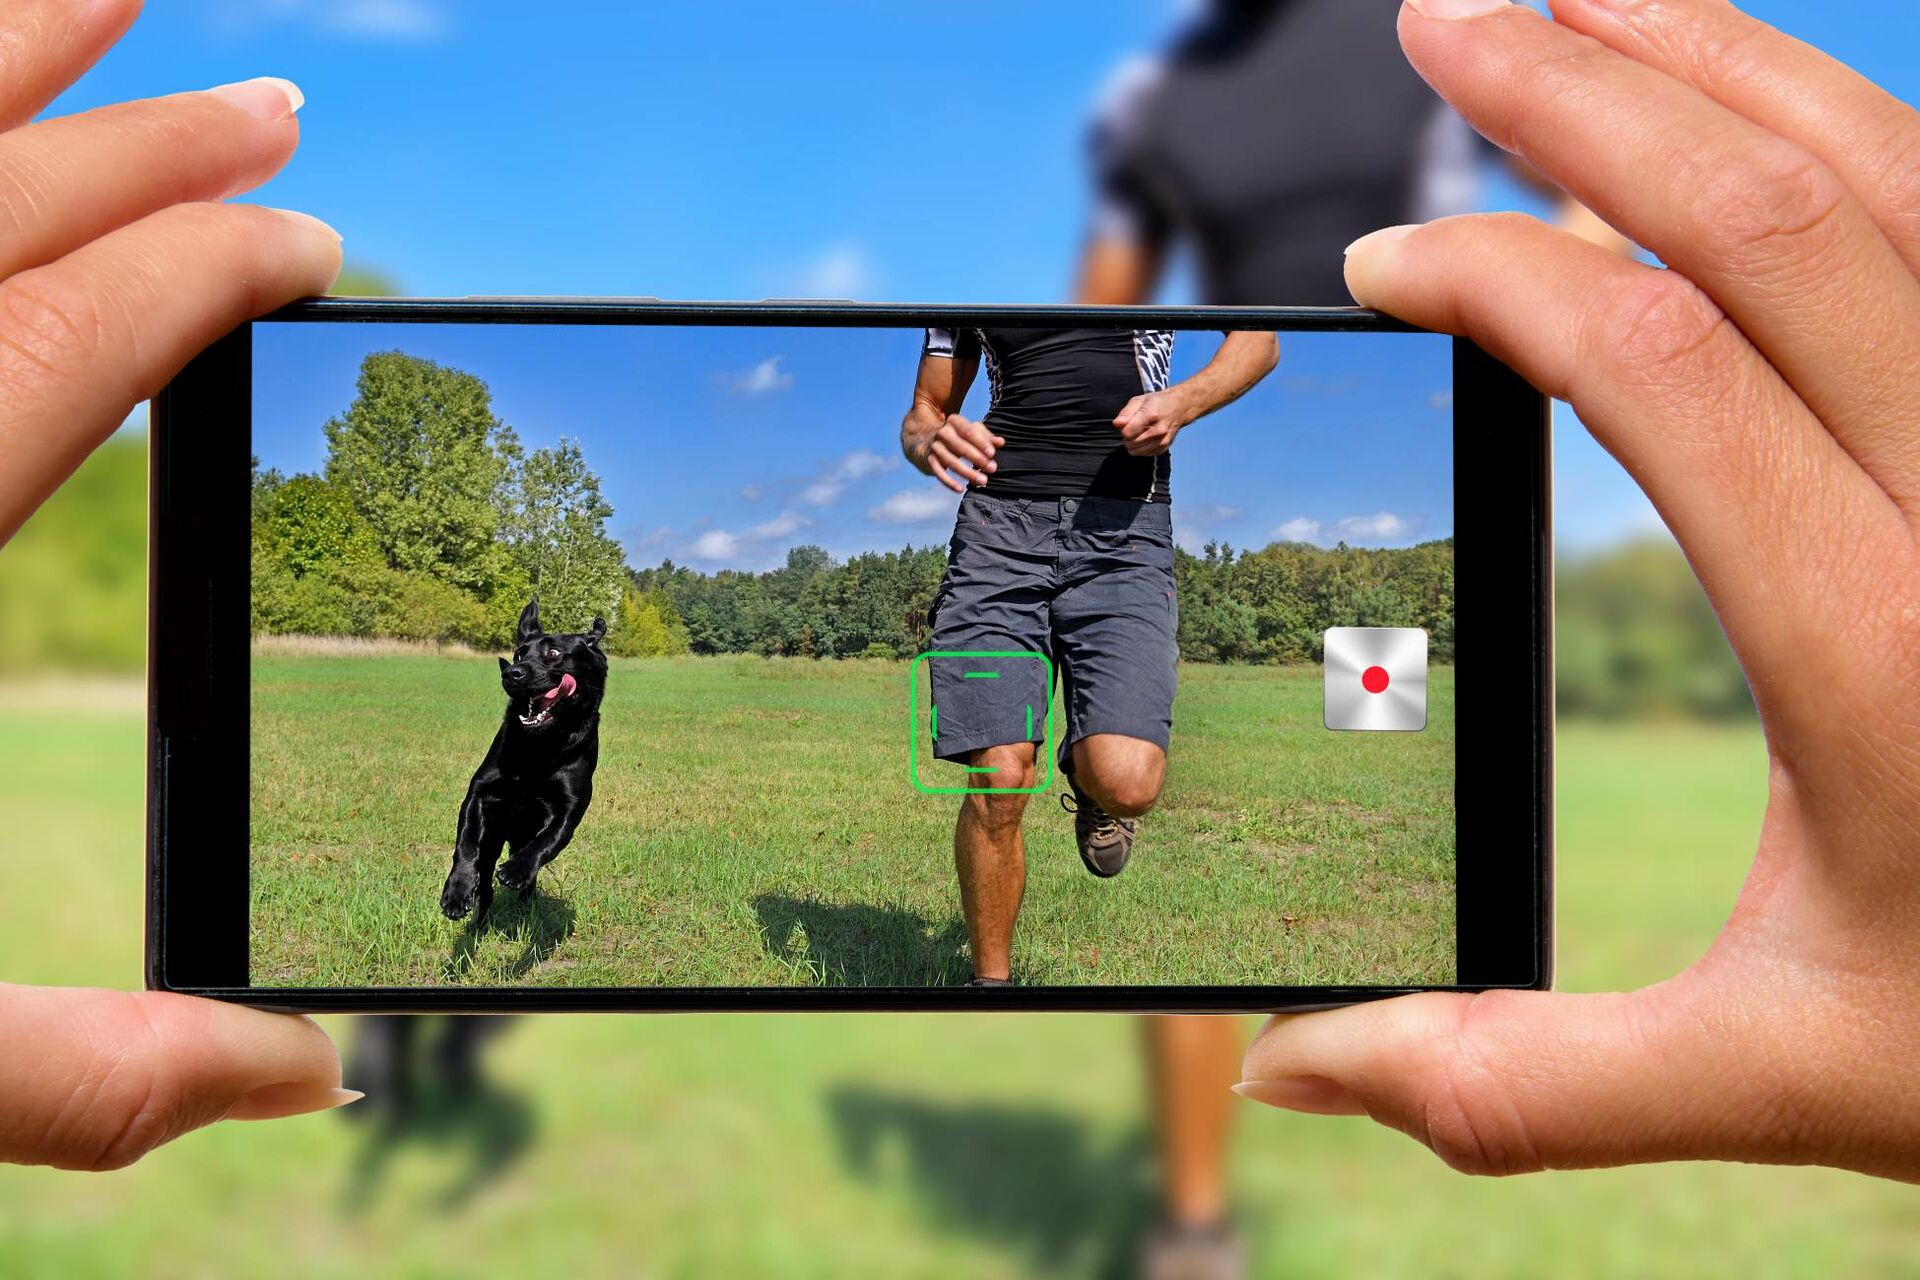 Smartphonebildschirm zeigt einen Mann, der mit einem Hund über einen Rasen rennt.